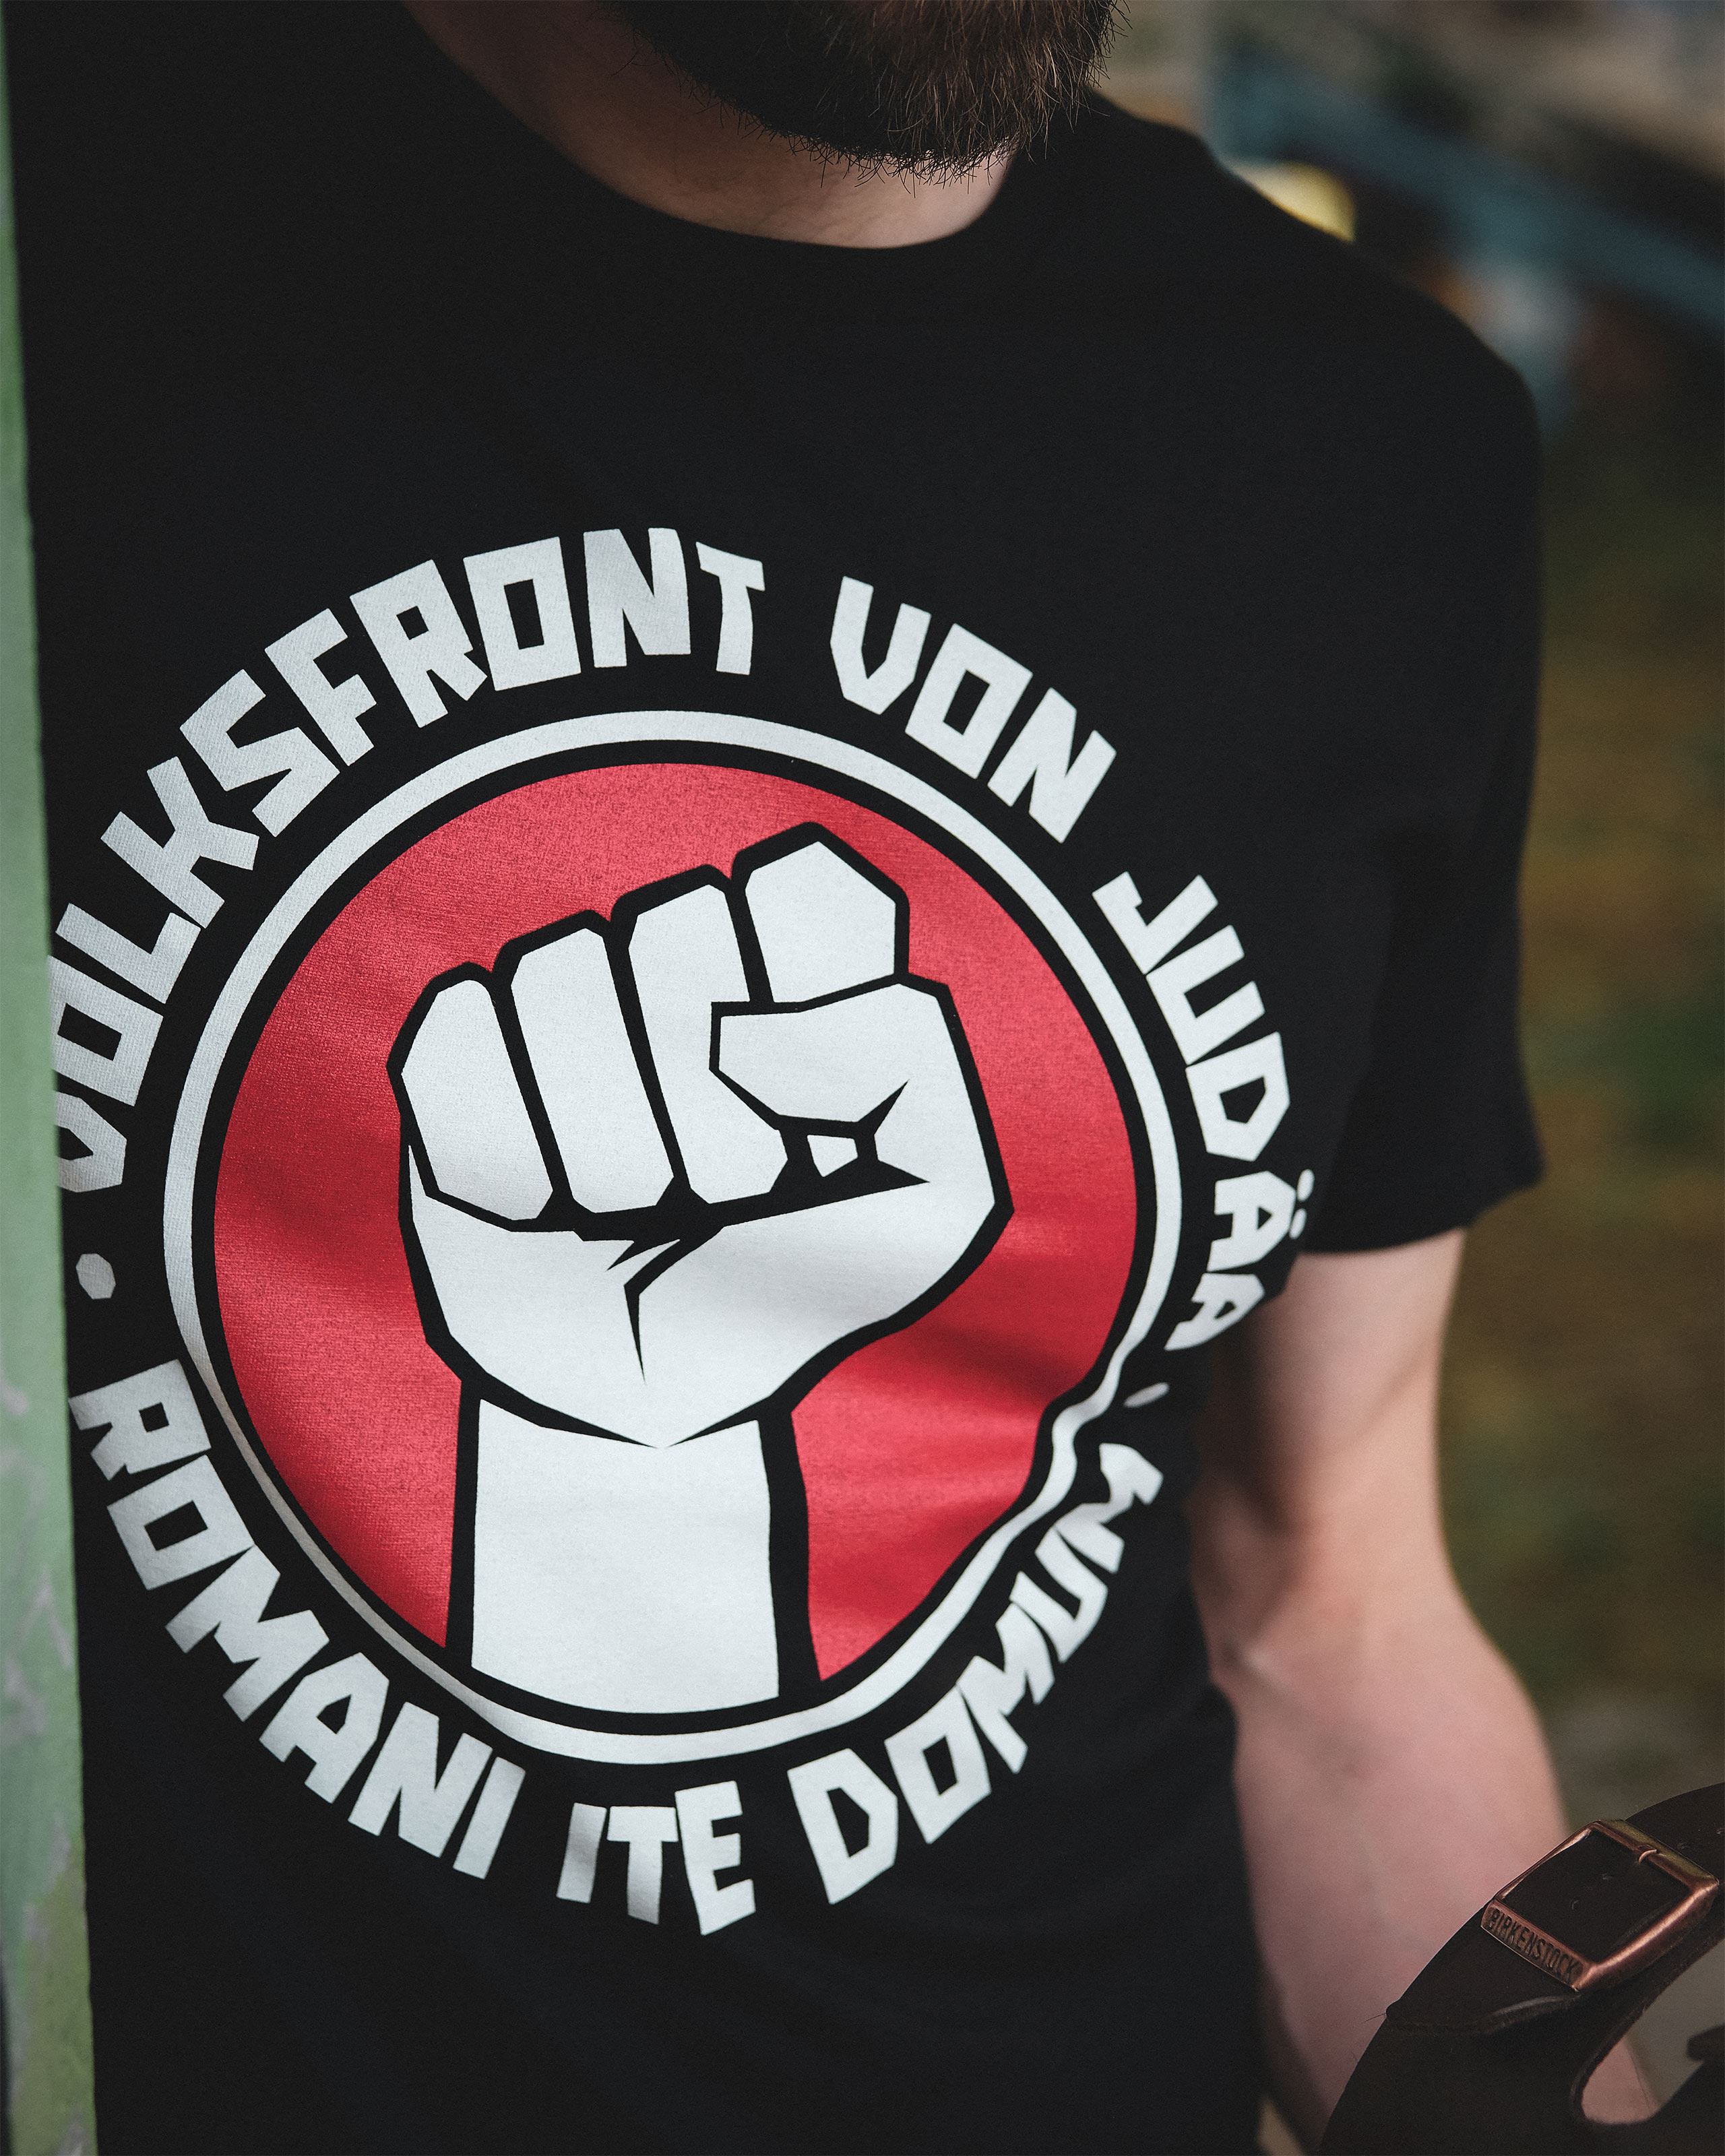 T-shirt Front populaire de Judée pour les fans de Monty Python noir